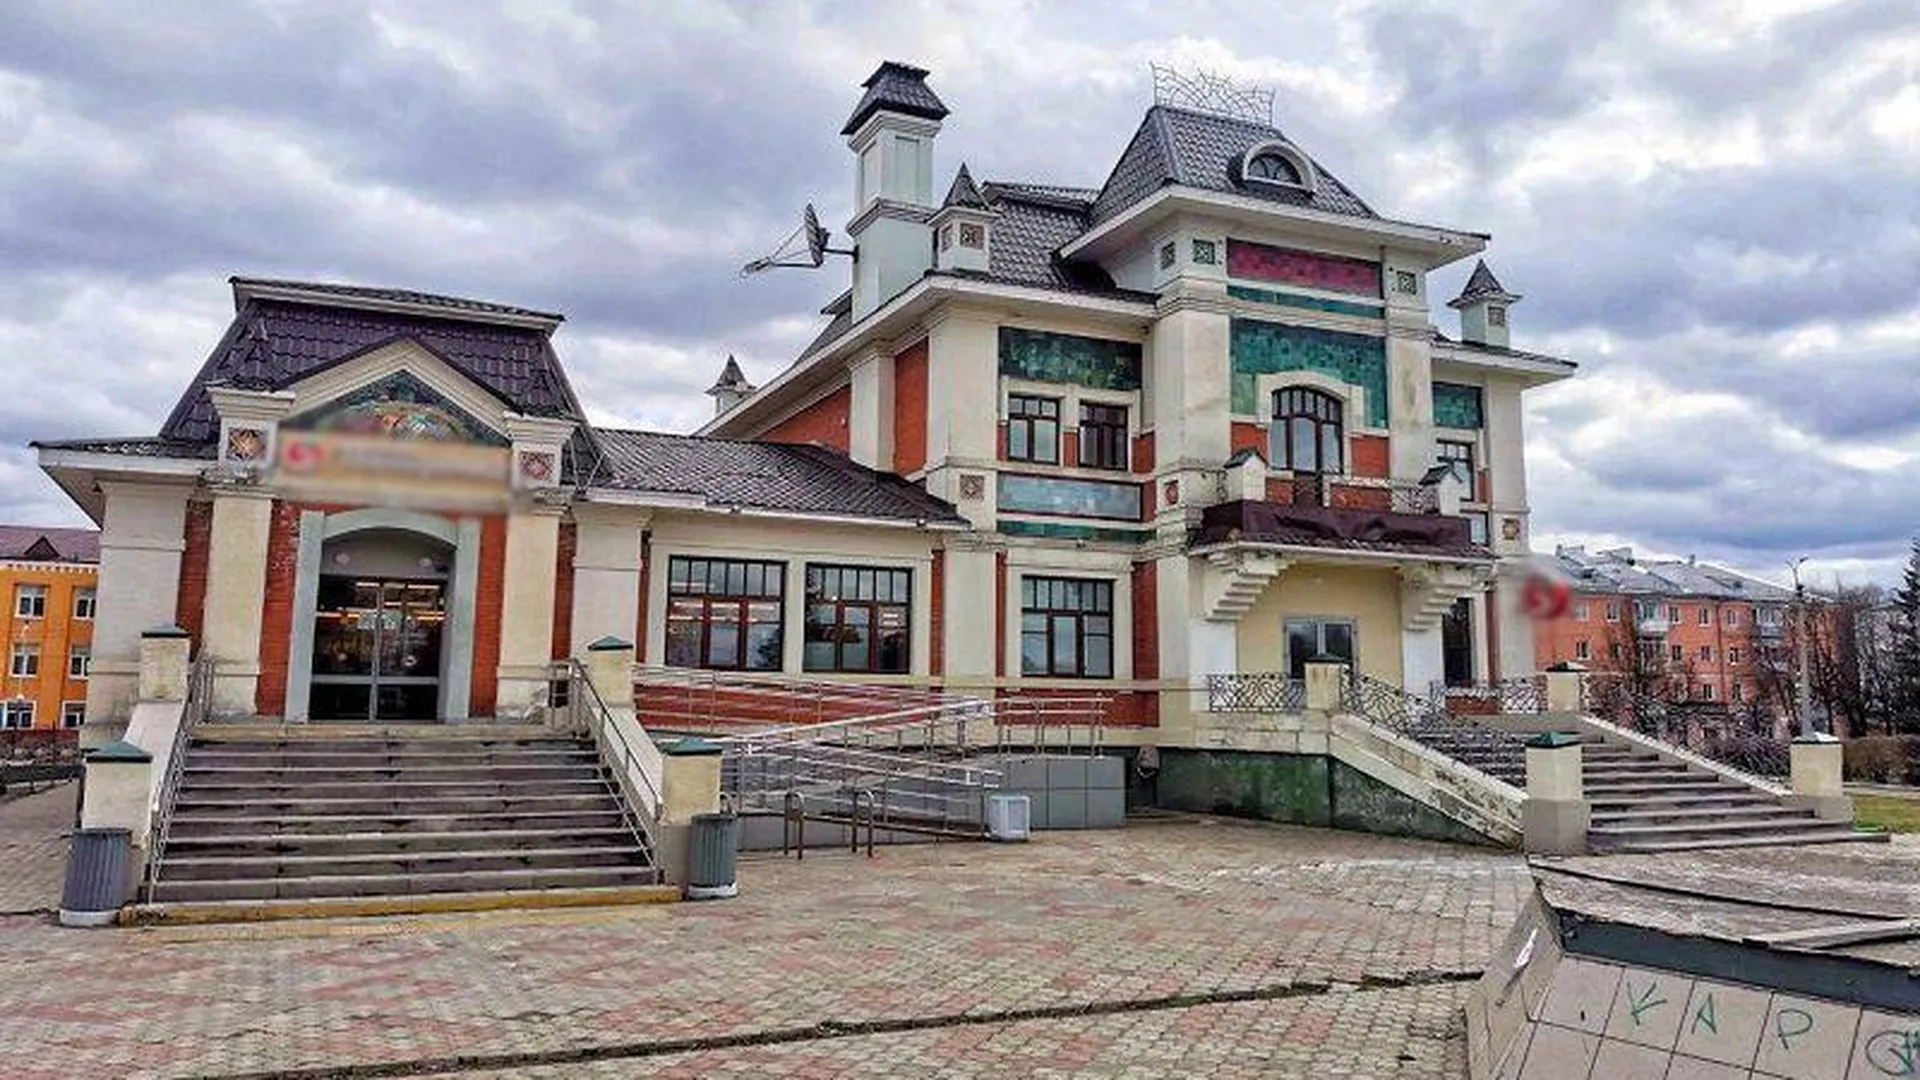 Продуктовый магазин в шикарном особняке поразил туристов в Хотьково